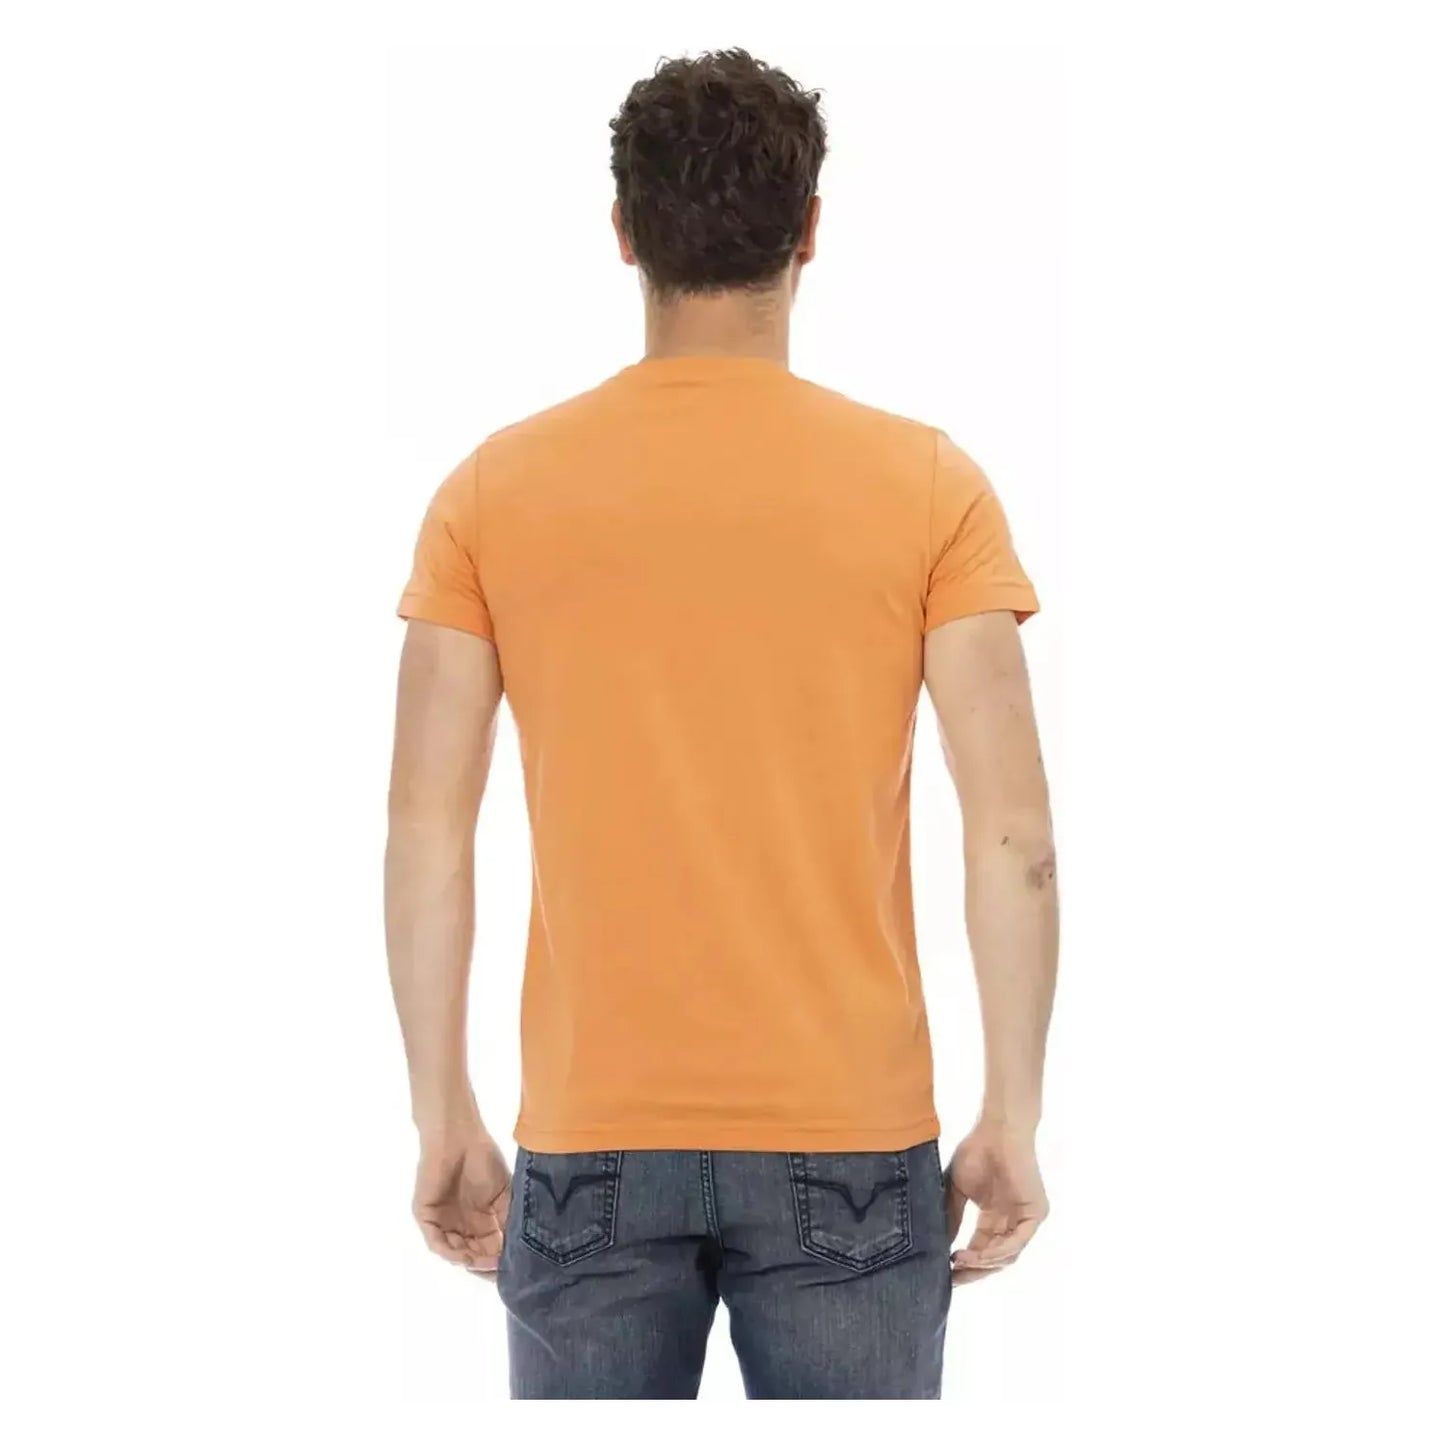 Trussardi Action Elegant Orange Short Sleeve Tee orange-cotton-t-shirt-19 product-22669-608439677-21-969f0e79-623.webp